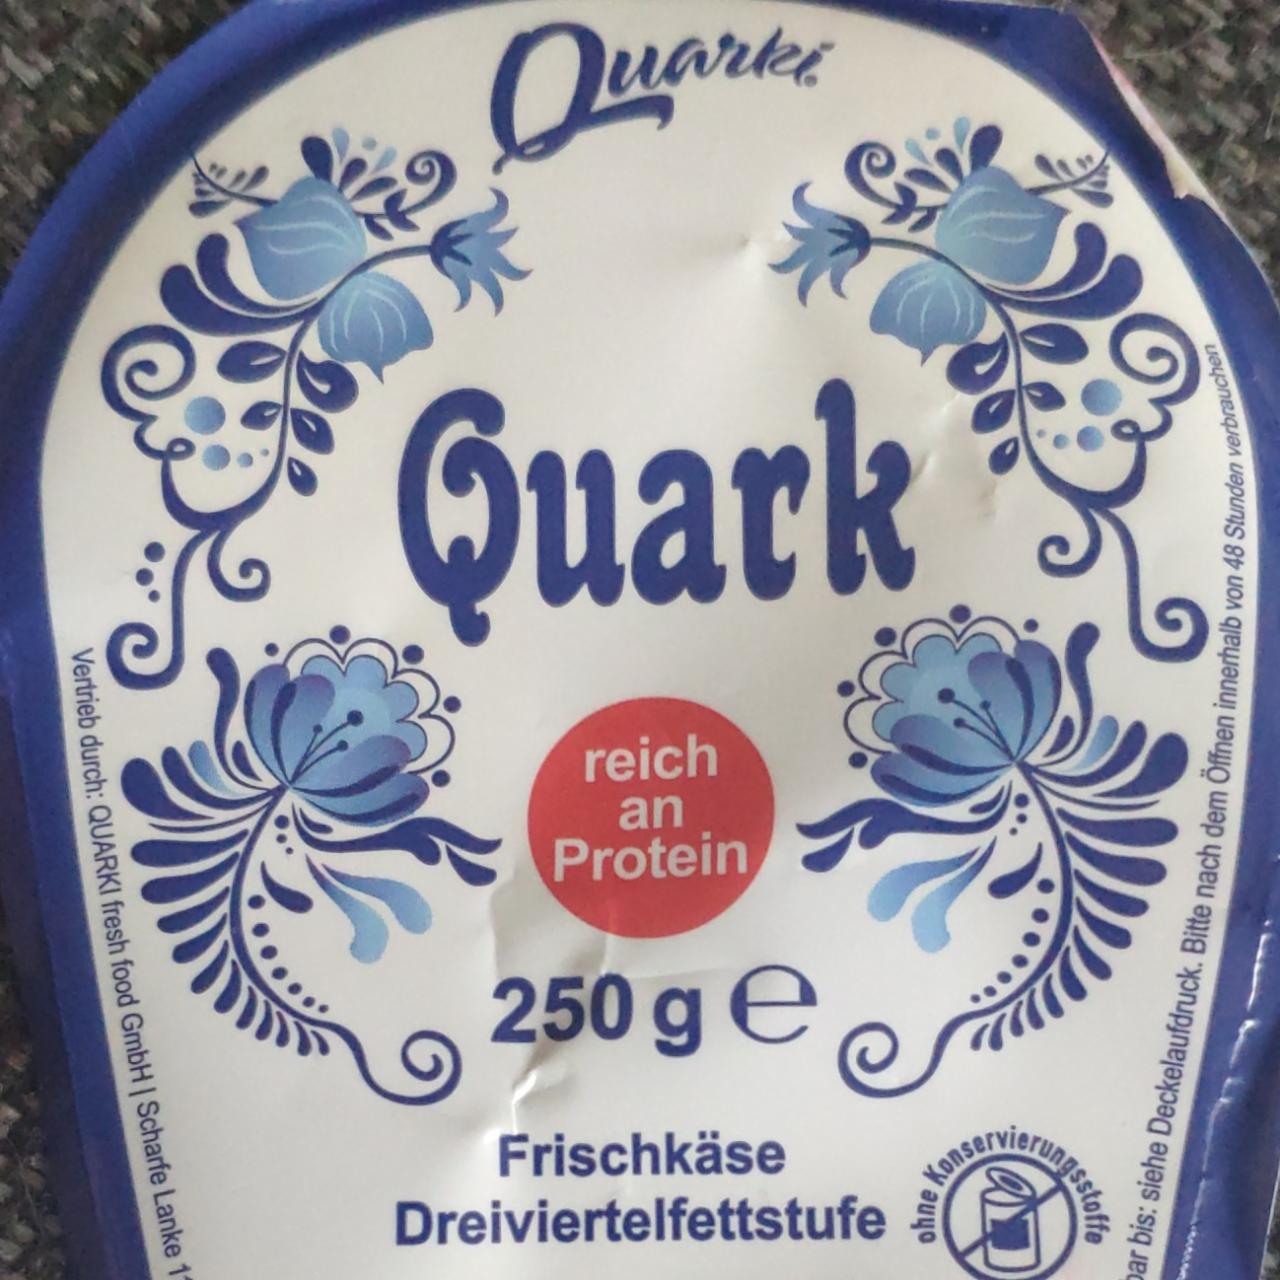 Фото - Творог 8% Quark Quarki